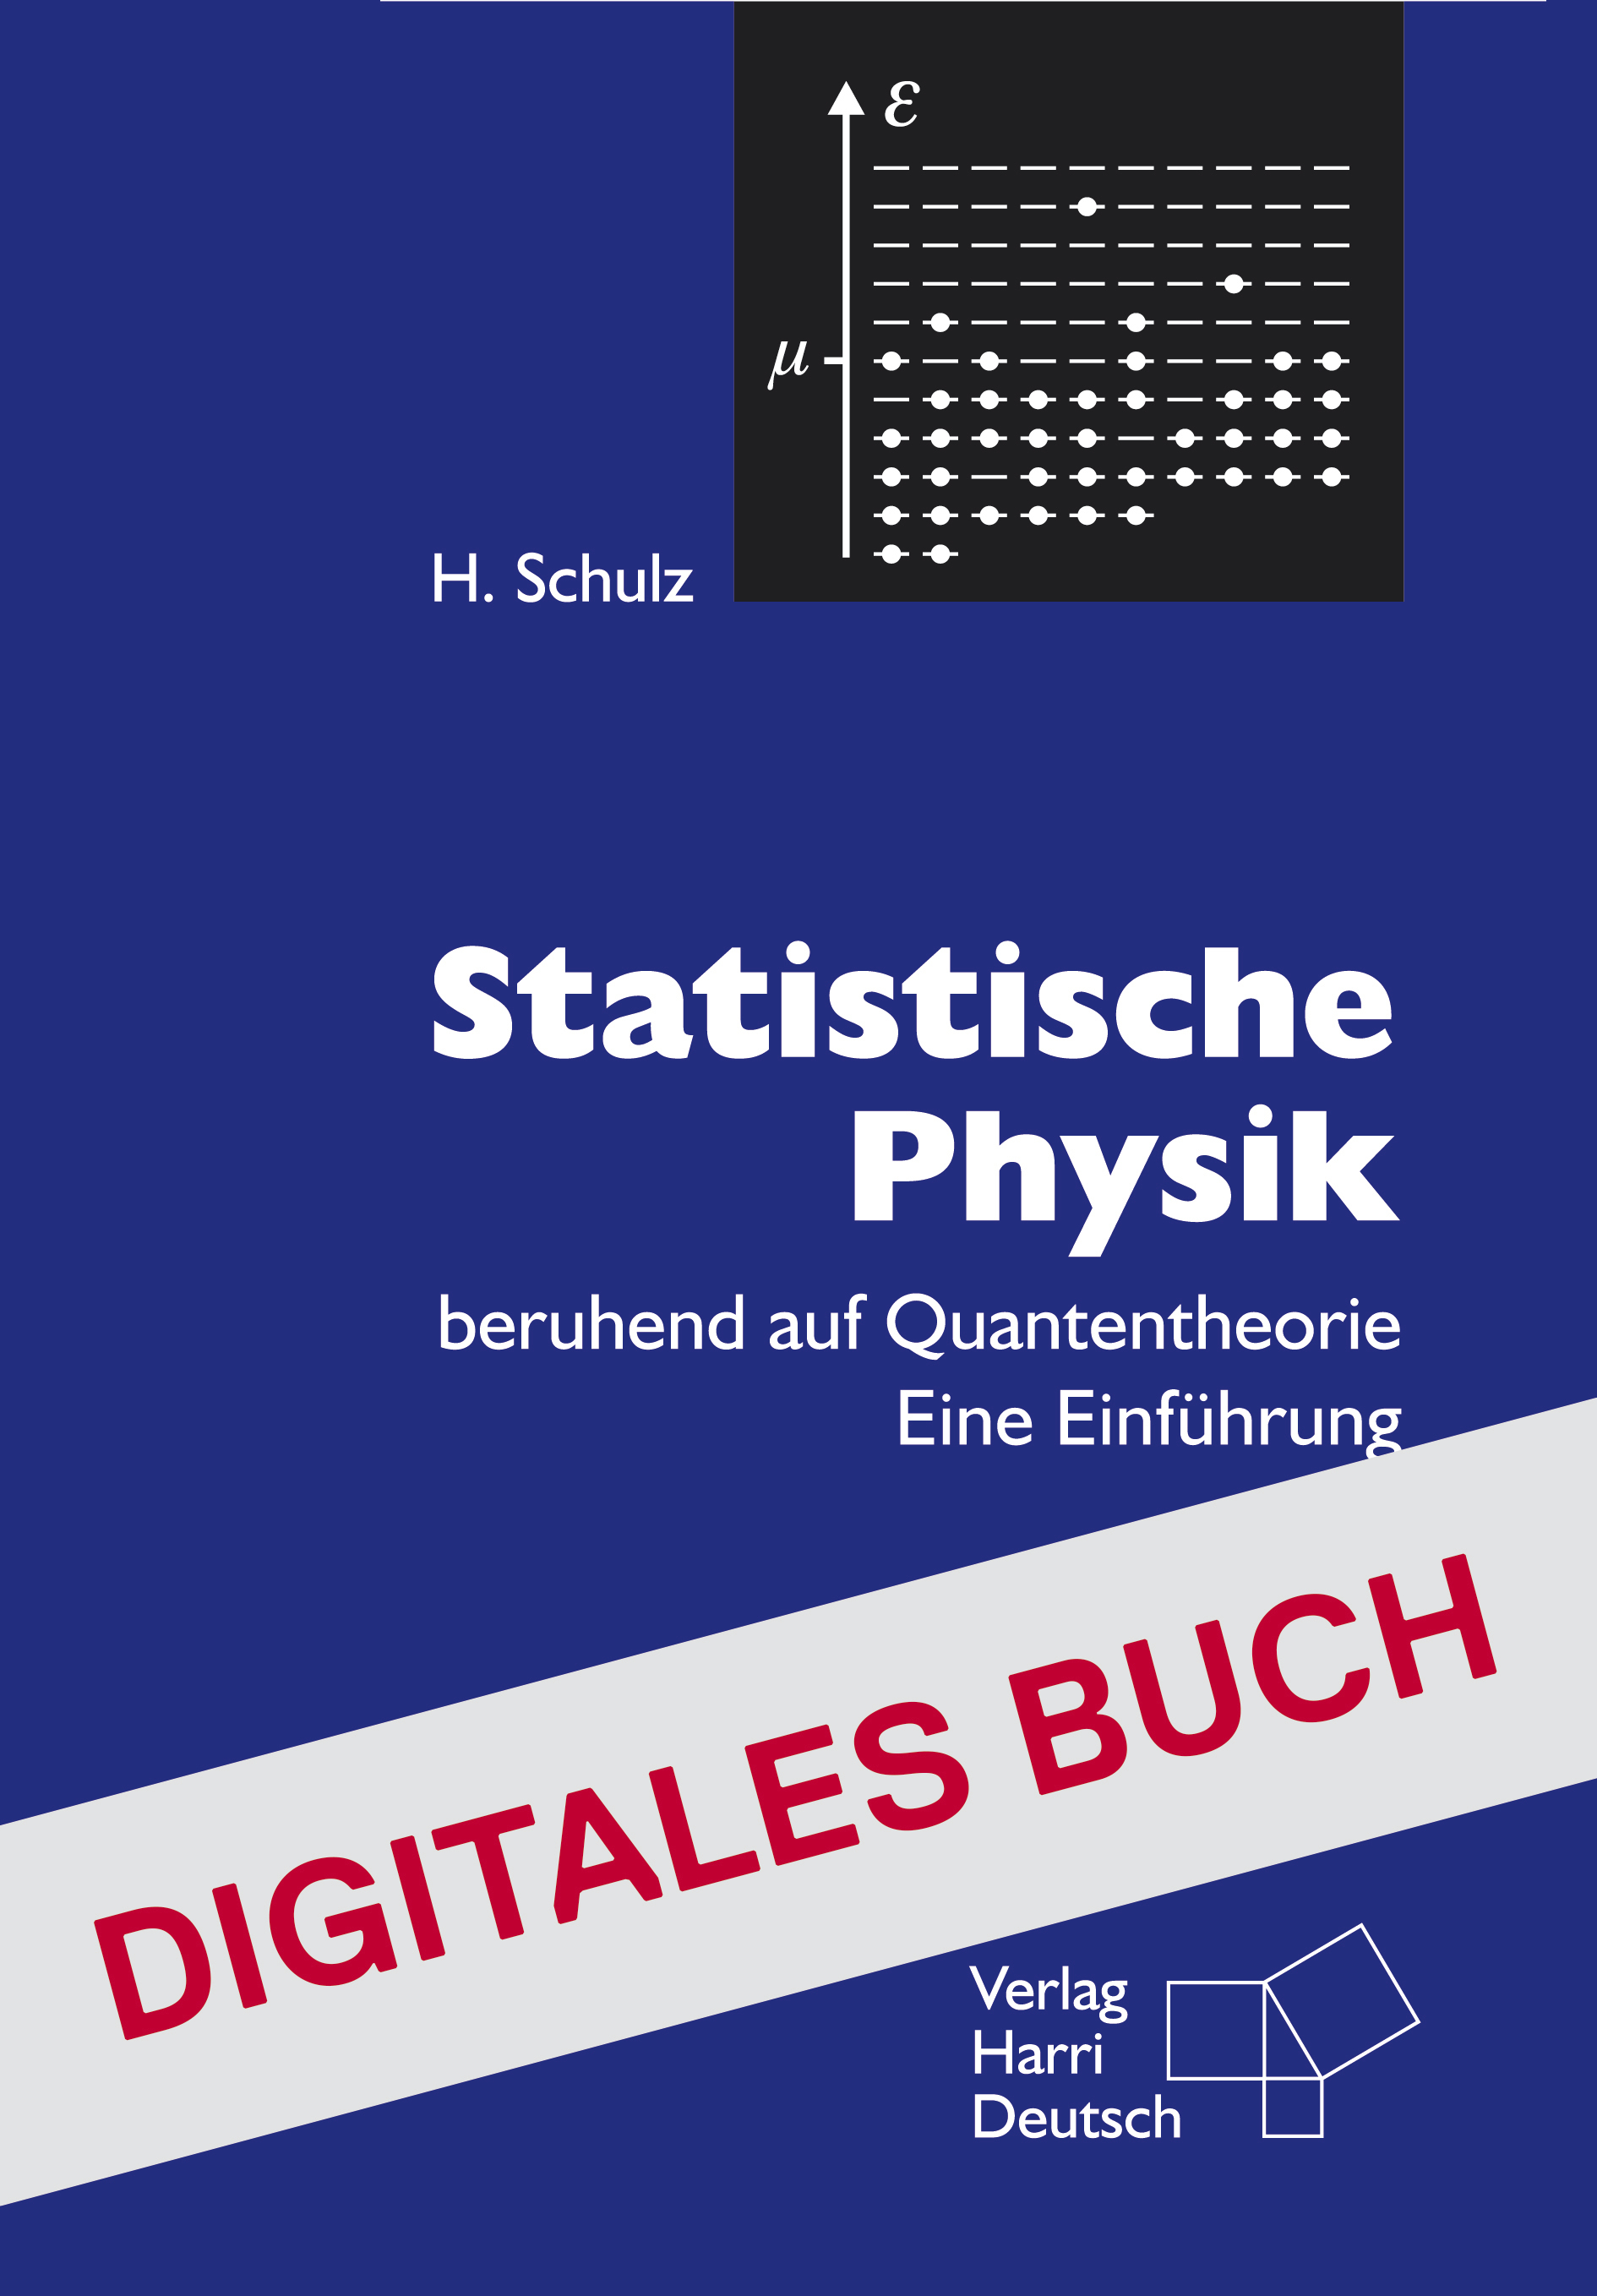 Statistische Physik - Digitales Buch